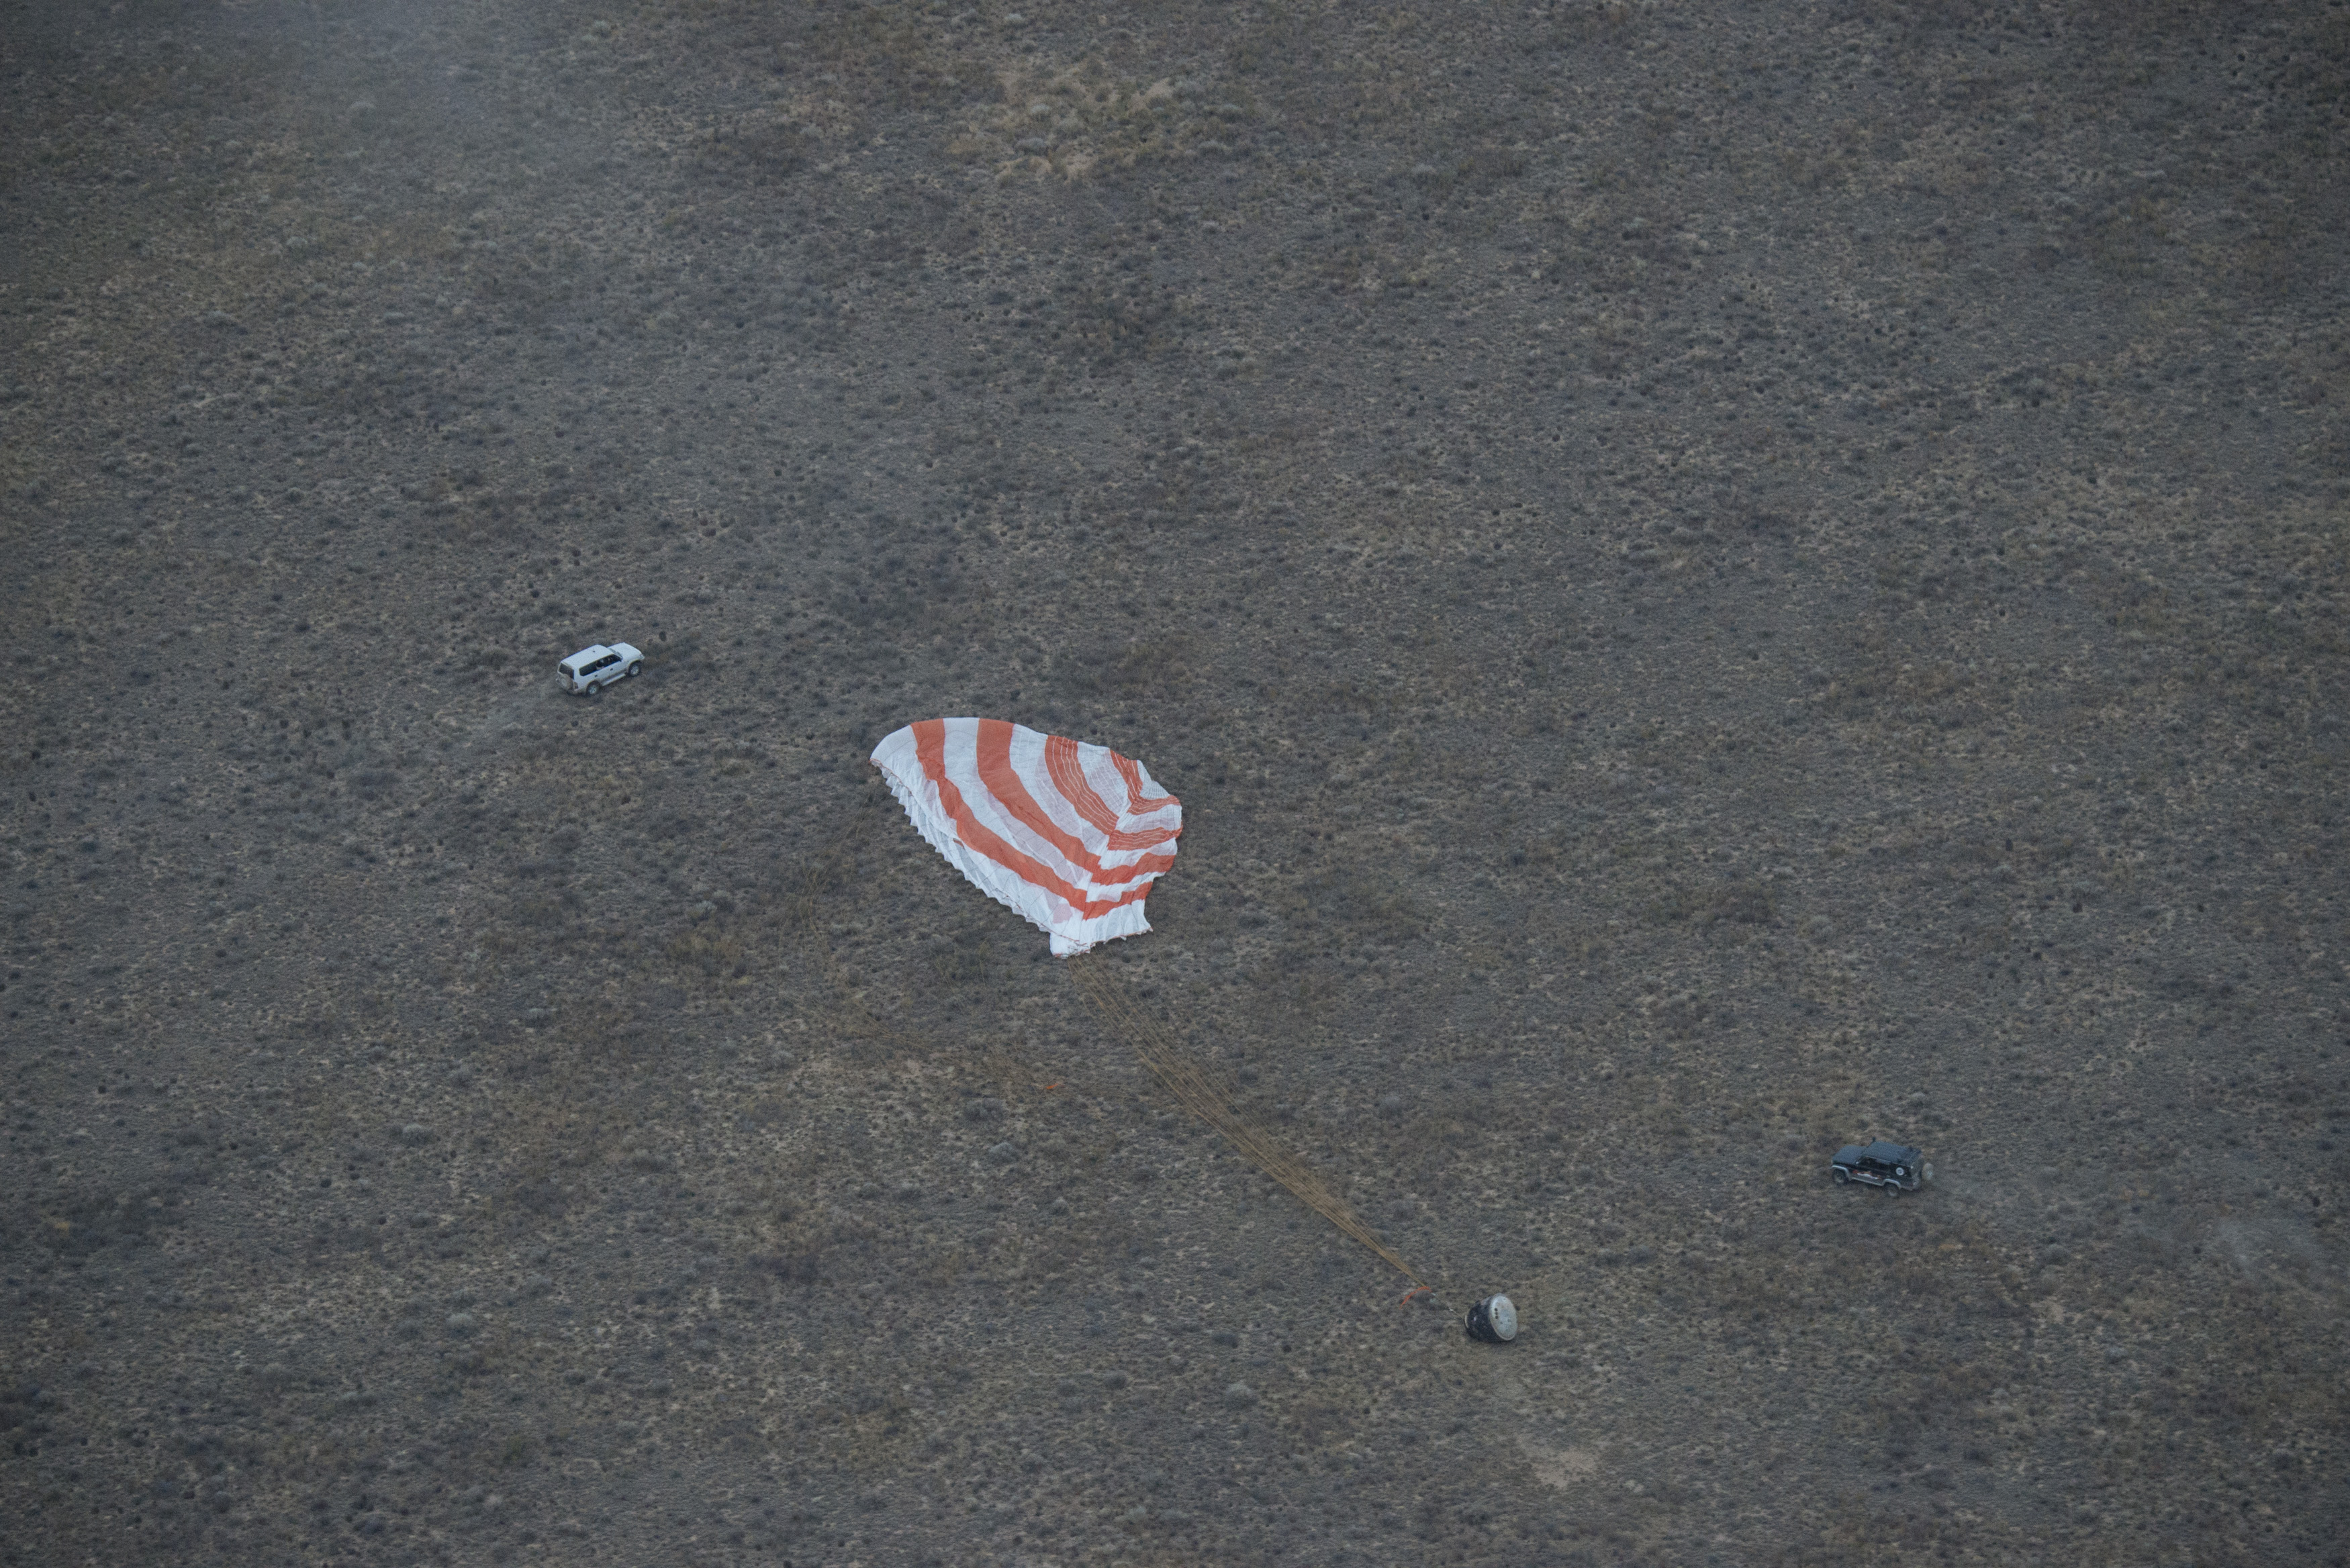 Soyuz_TMA-16M_capsule_landing.jpg